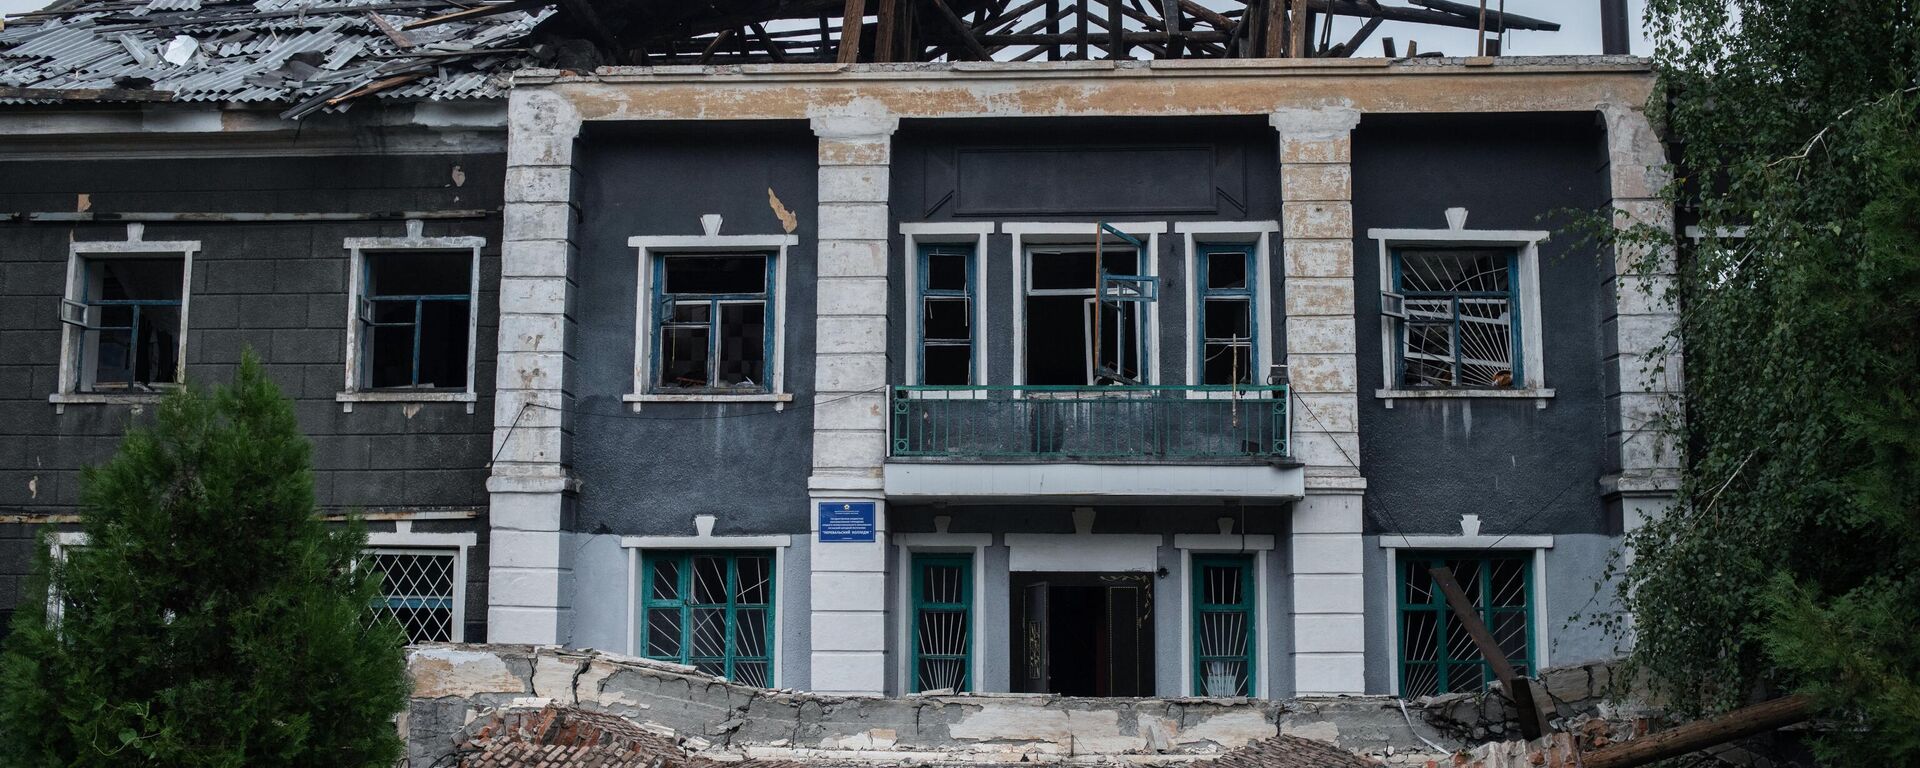 Zgrada Perevalskog koledža u Perevalsku, uništena u ukrajinskom granatiranju - Sputnik Srbija, 1920, 30.12.2022